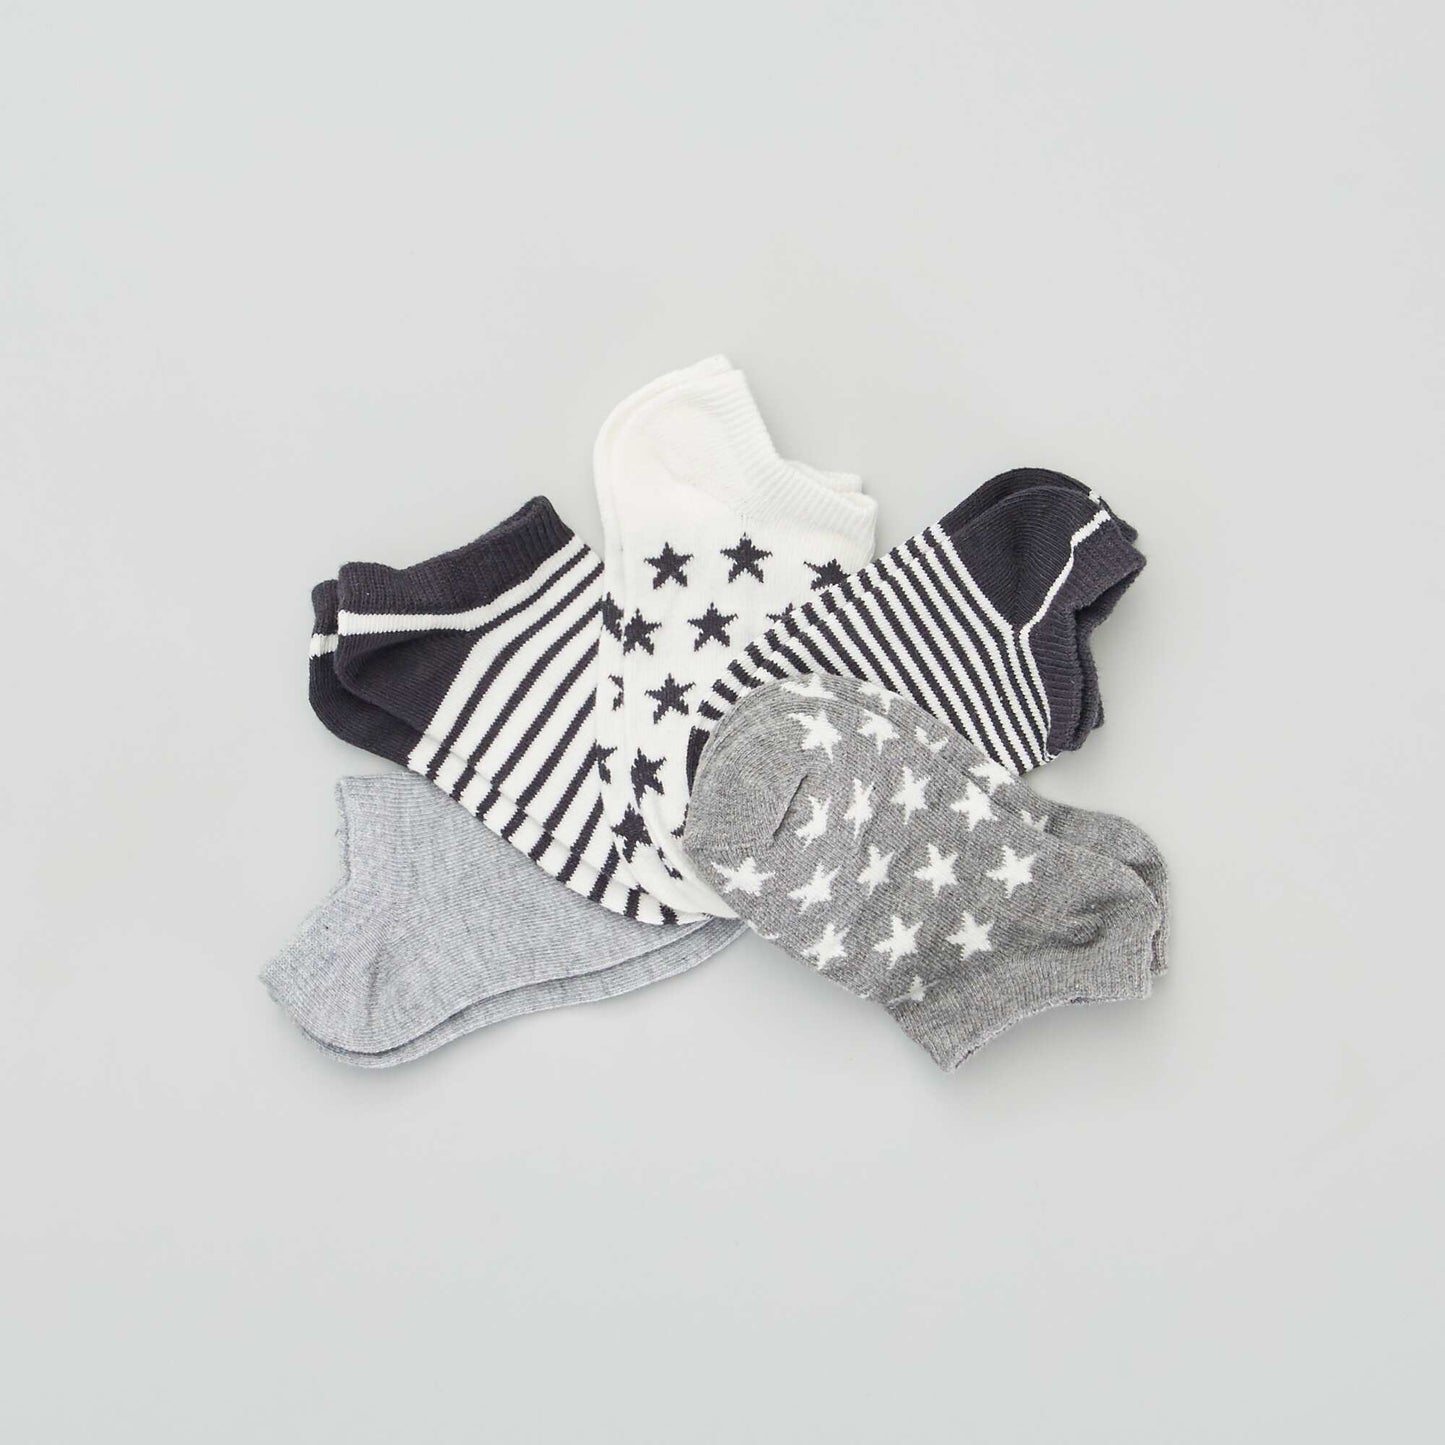 Chaussettes invisibles - Lot de 5 Gris/blanc/noir